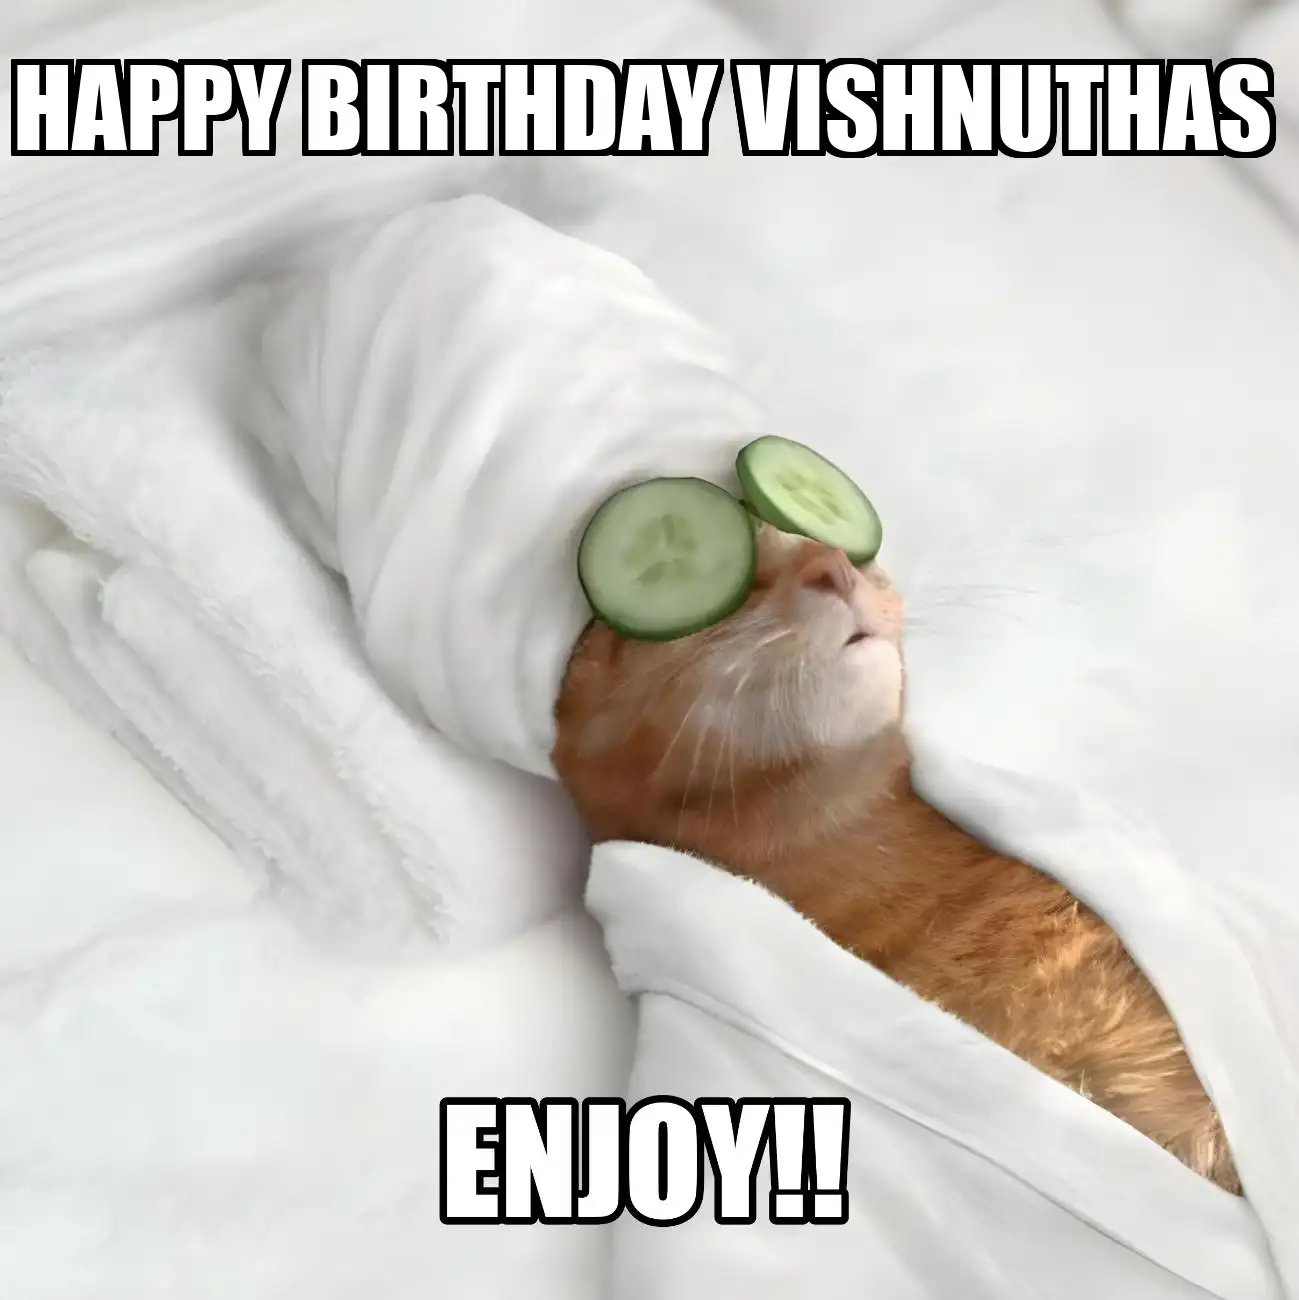 Happy Birthday Vishnuthas Enjoy Cat Meme